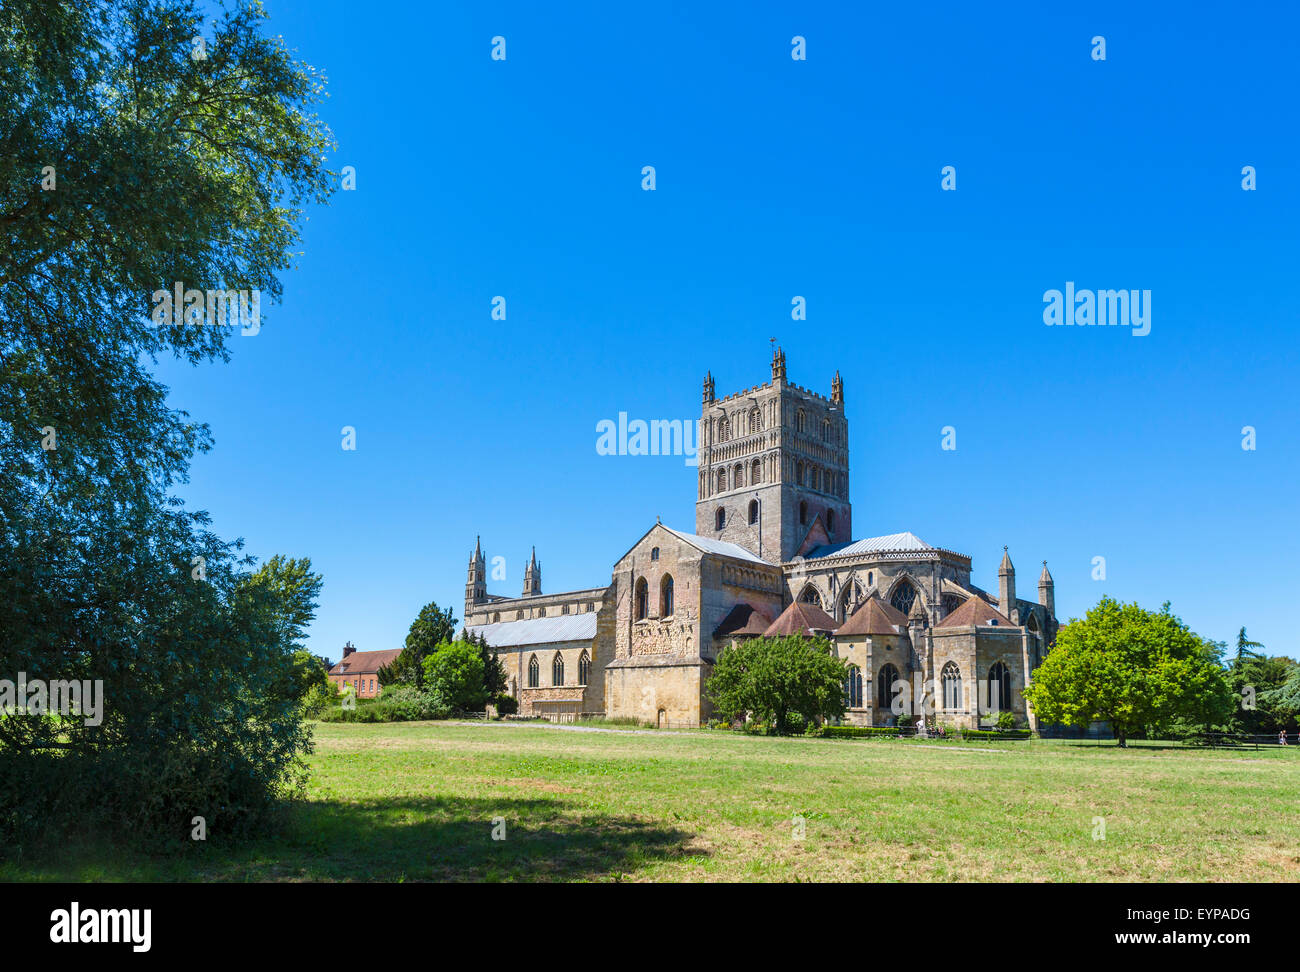 La Abadía de Tewkesbury o la iglesia de la Abadía de Santa María la Virgen, Tewkesbury, Gloucestershire, Inglaterra, Reino Unido. Foto de stock